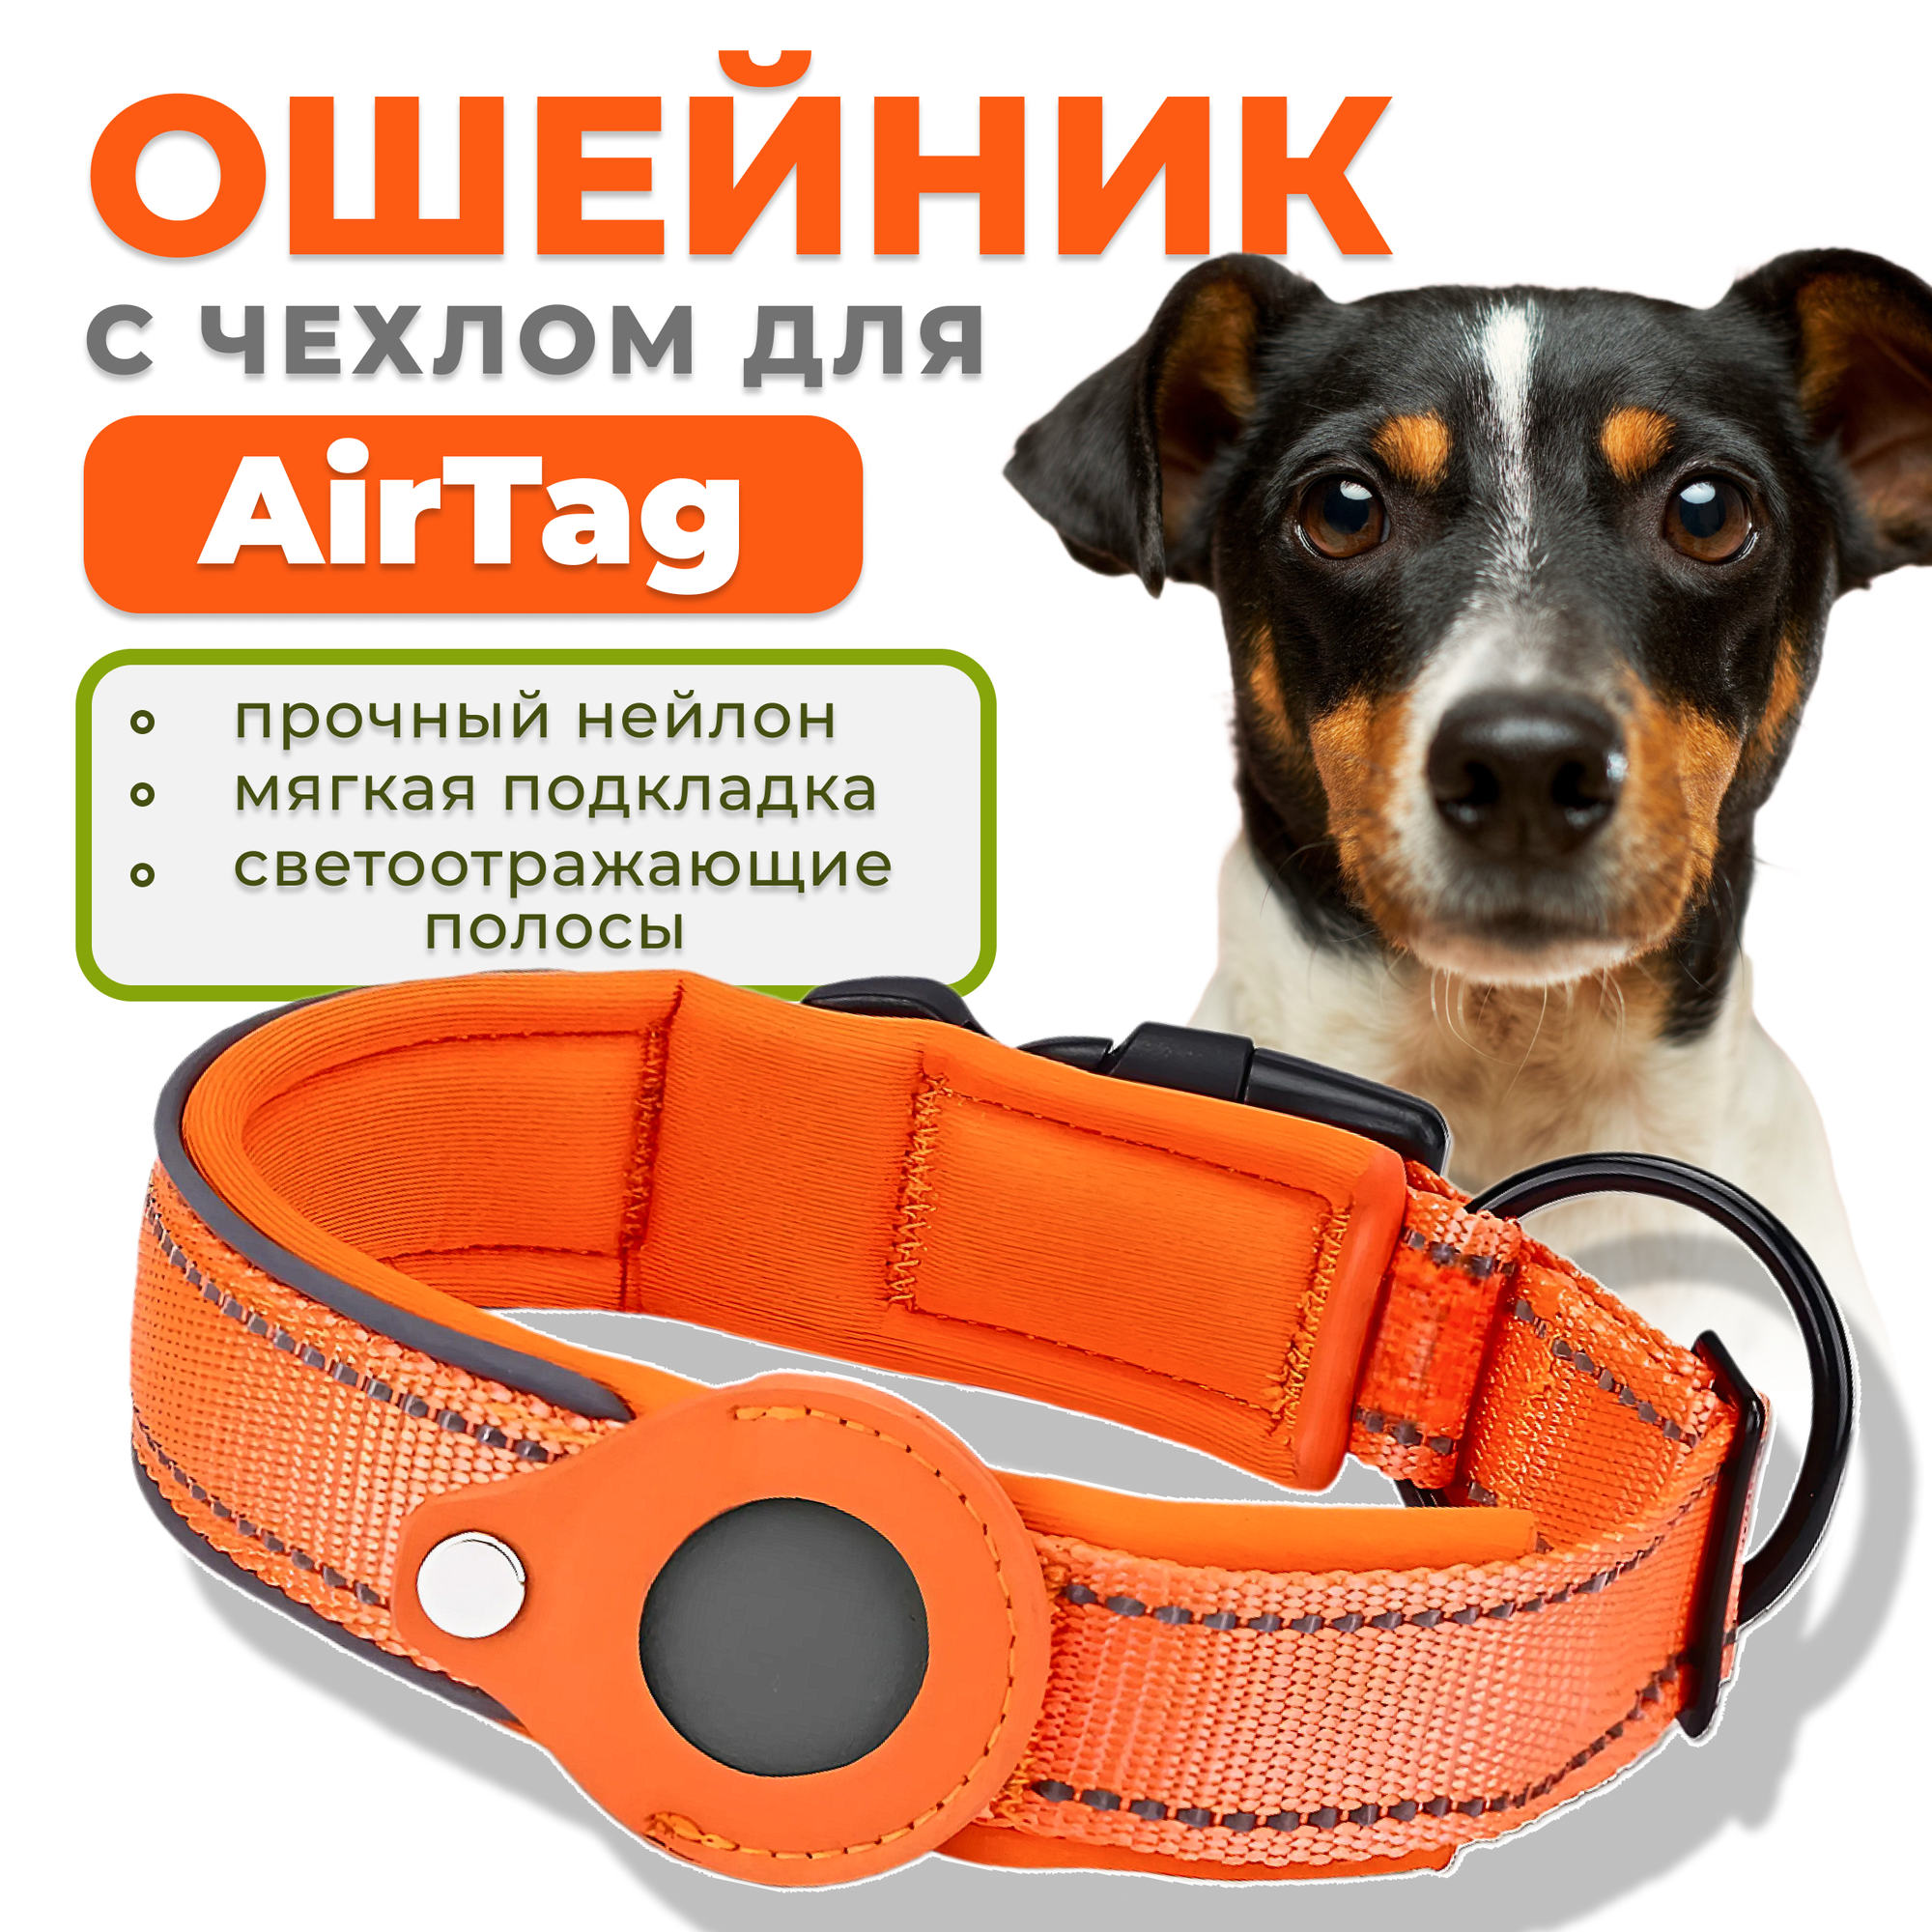 Ошейник для собак с чехлом для AirTag, размер М, оранжевый